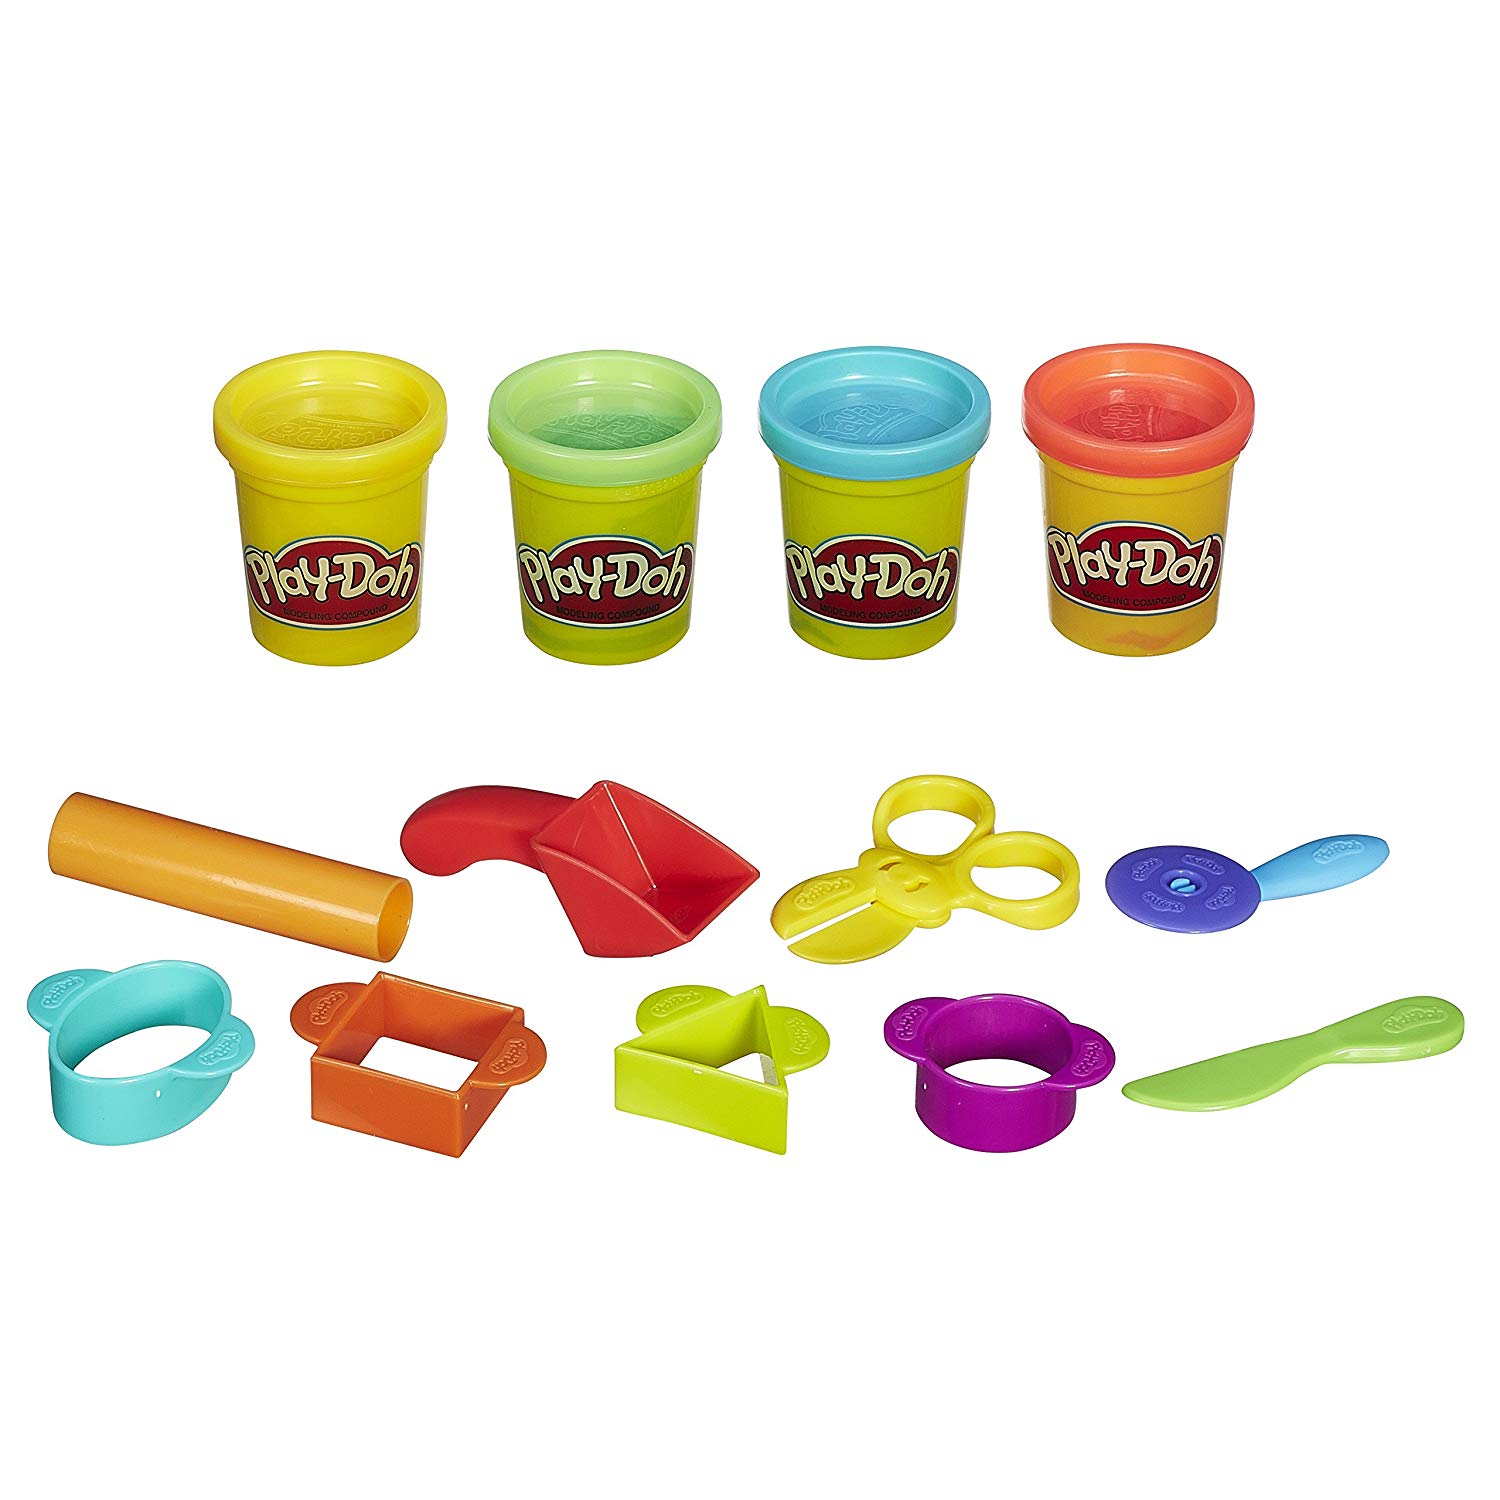 Большой набор пластилина. Playdo пластилин набор. Пластилин Хасбро. Play-Doh Hasbro набор базовый. Пластилин "Play-Doh зубной врач".